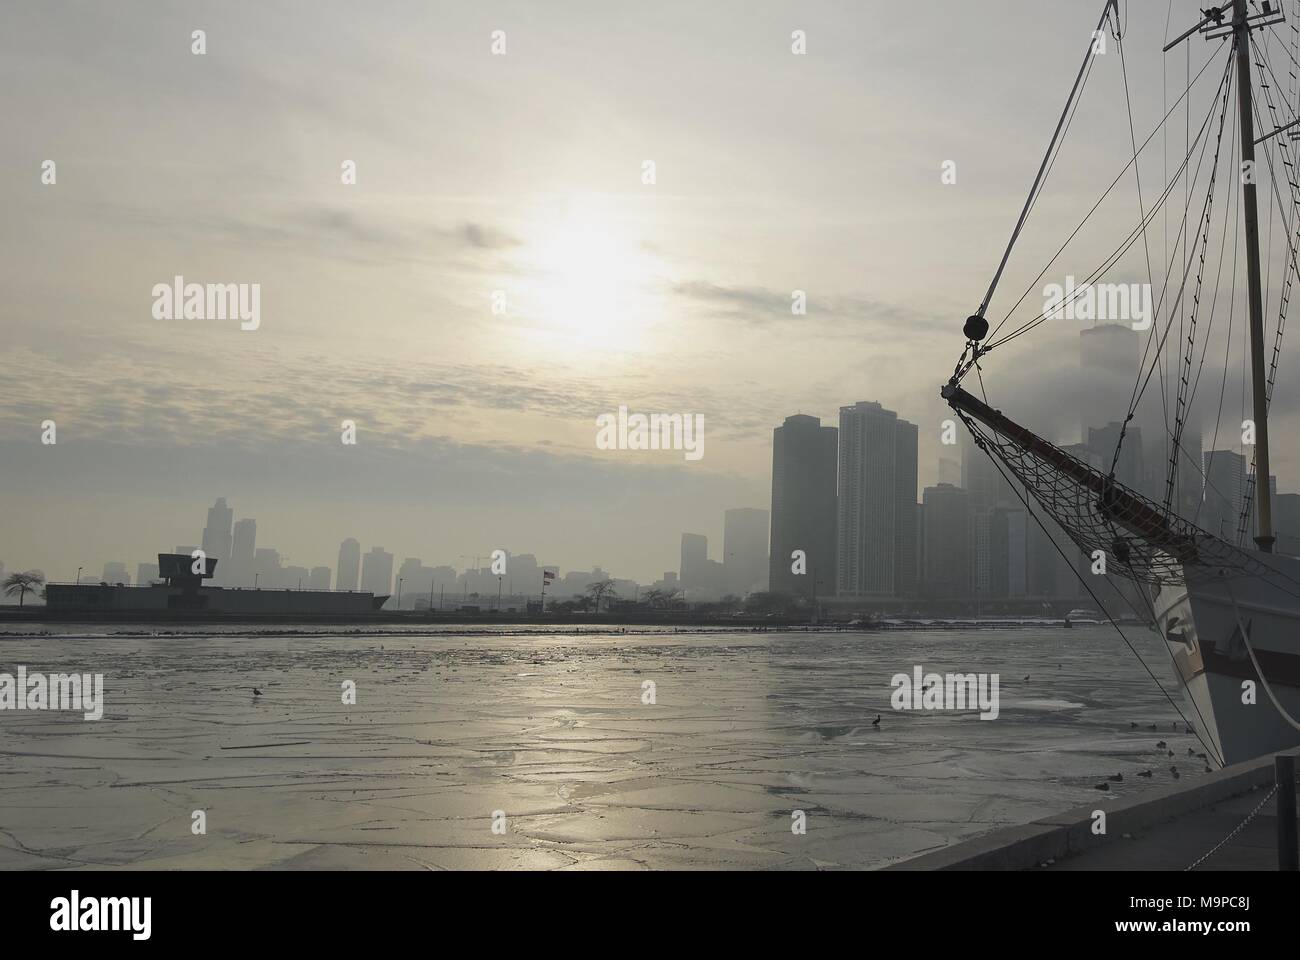 Invierno de Chicago skyline sobre el agua con la ciudad y el horizonte sobre el agua y la silueta del buque mástil en primer plano Foto de stock